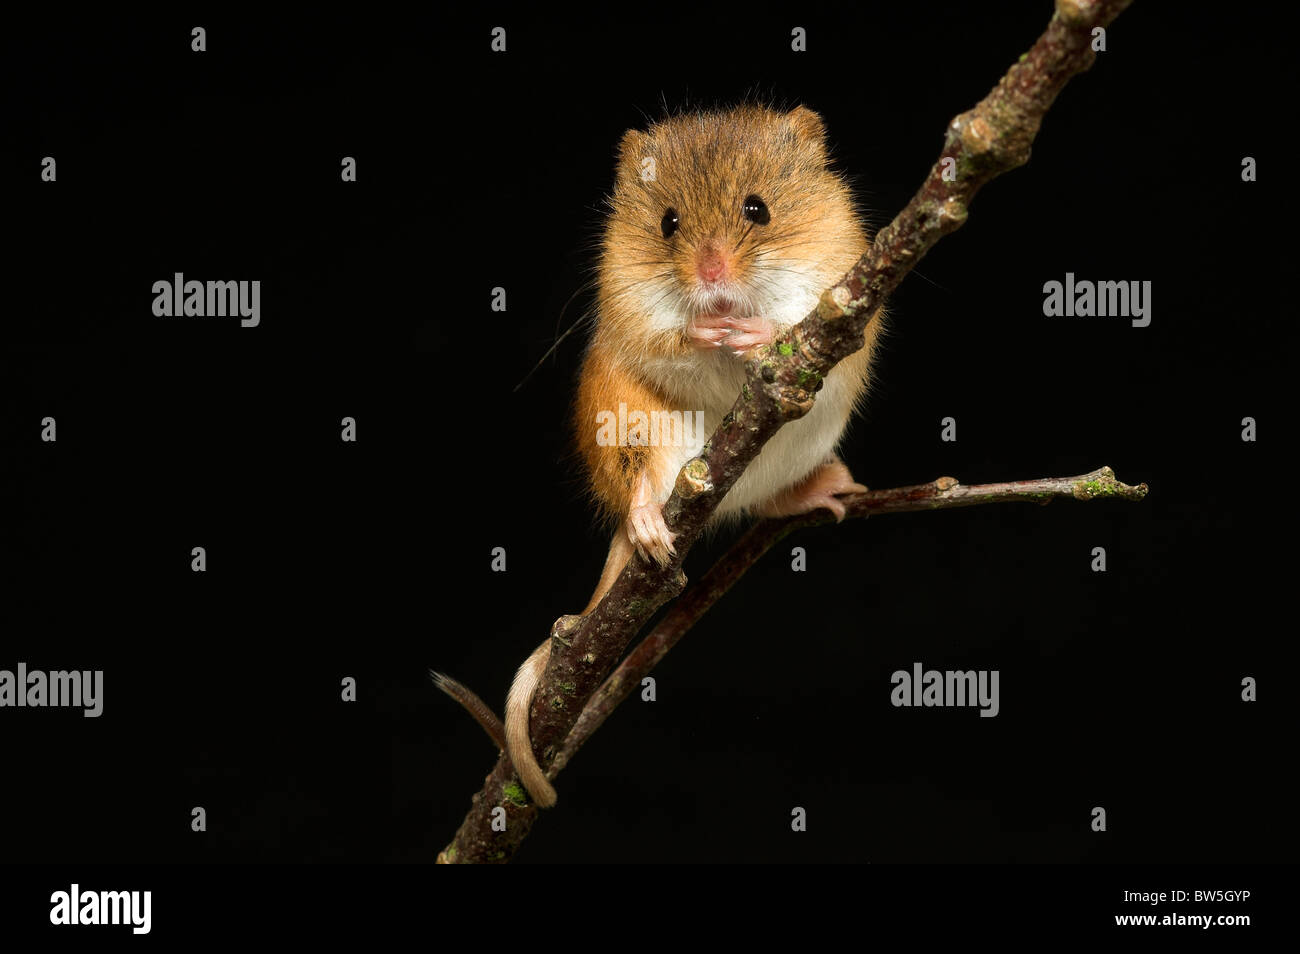 Une souris mignon perché sur une branche, avec sa queue enroulée autour de la brindille, l'hiver aussi. Dorset, UK Janvier 2010. Banque D'Images